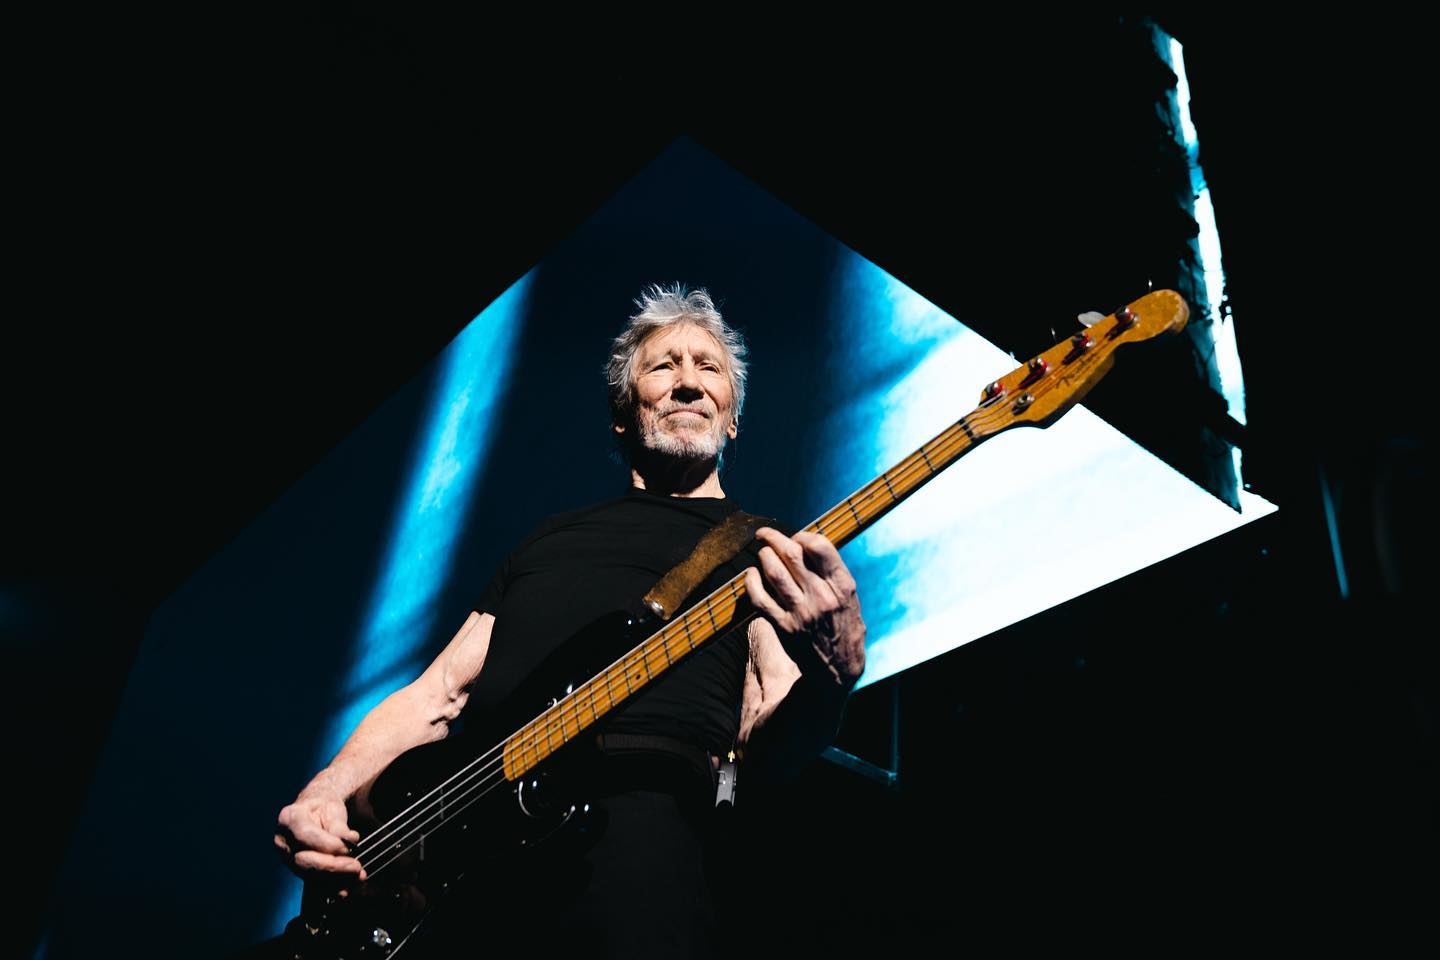 Botrányt okozott öltözékével Roger Waters, a berlini rendőrség eljárást indított ellene